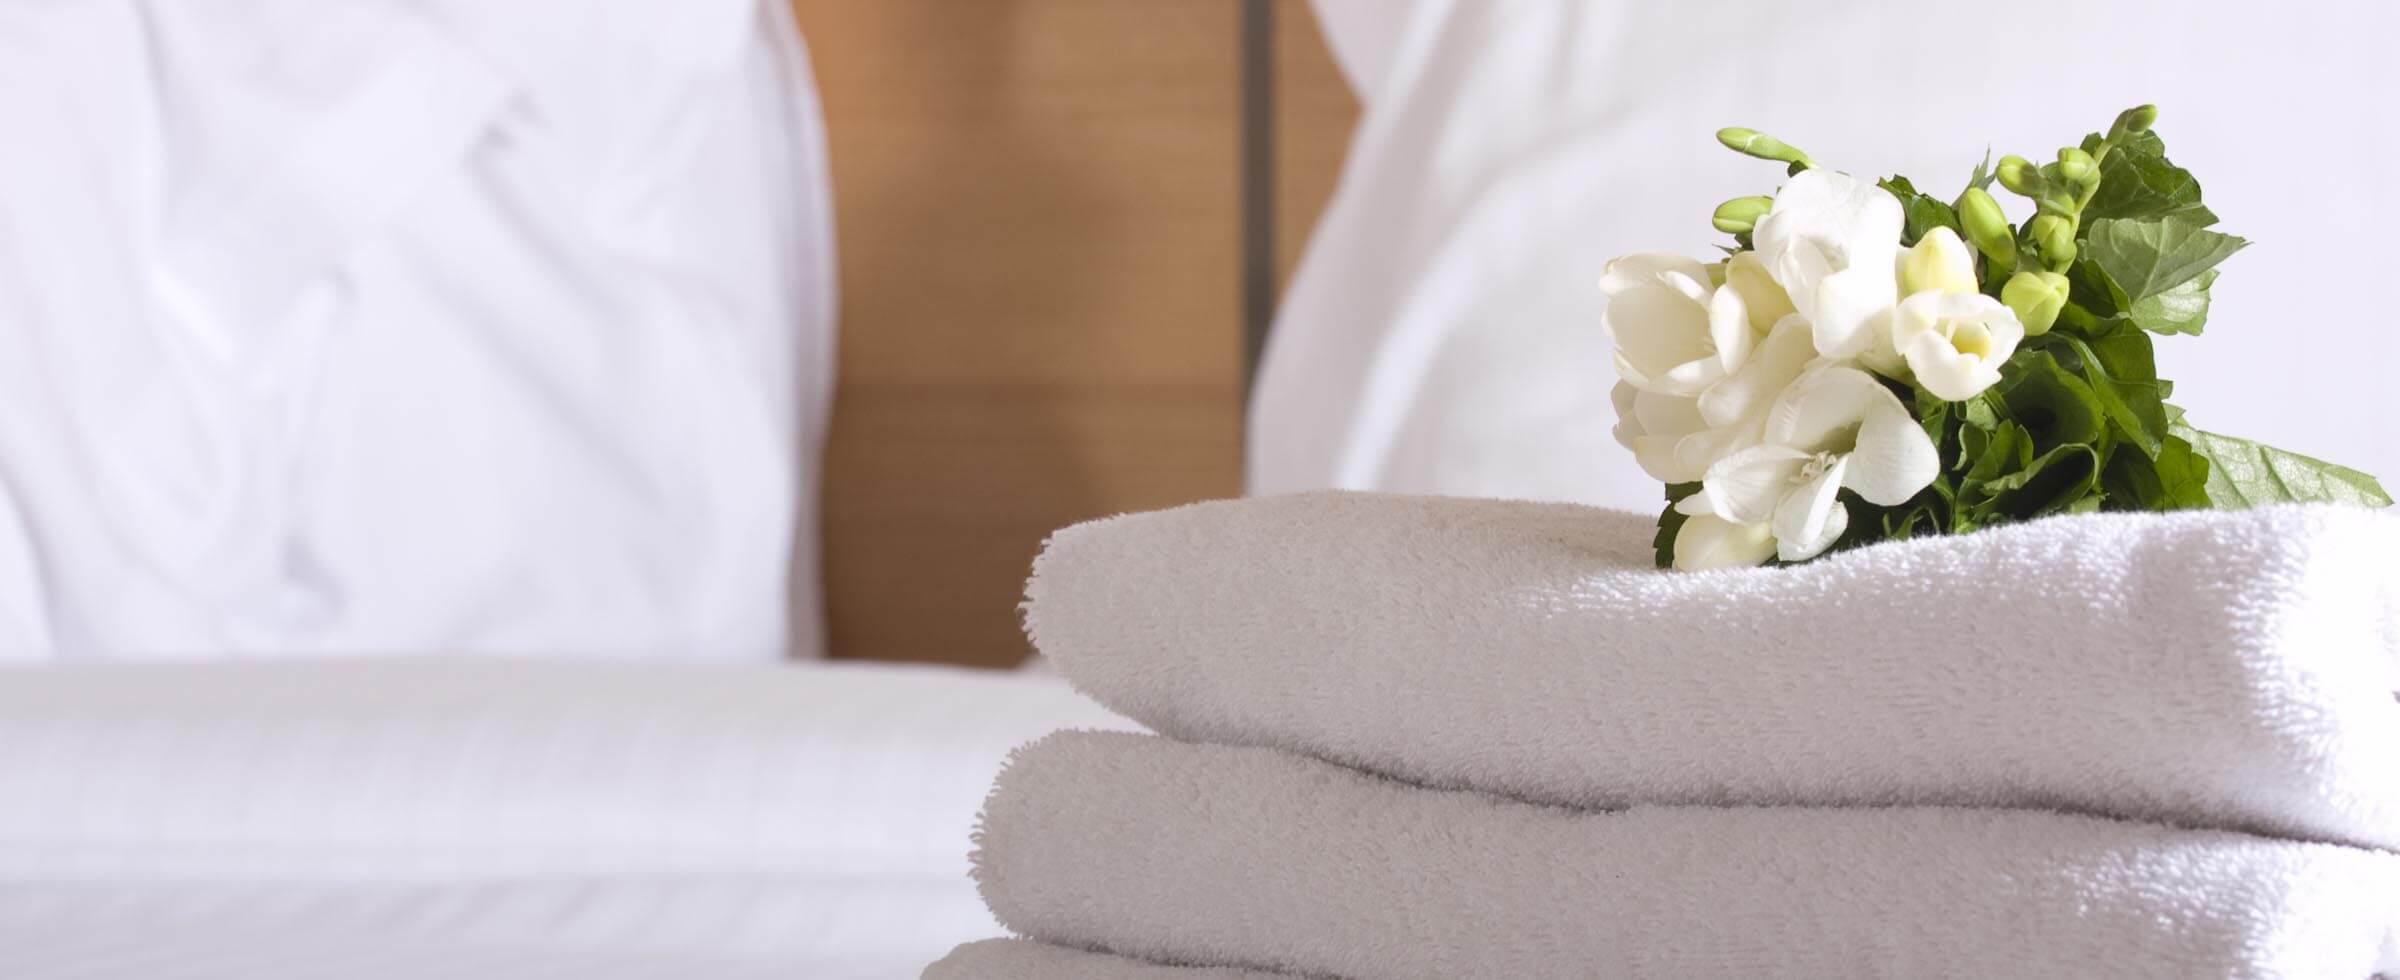 toallas y flores en la cama del hotel